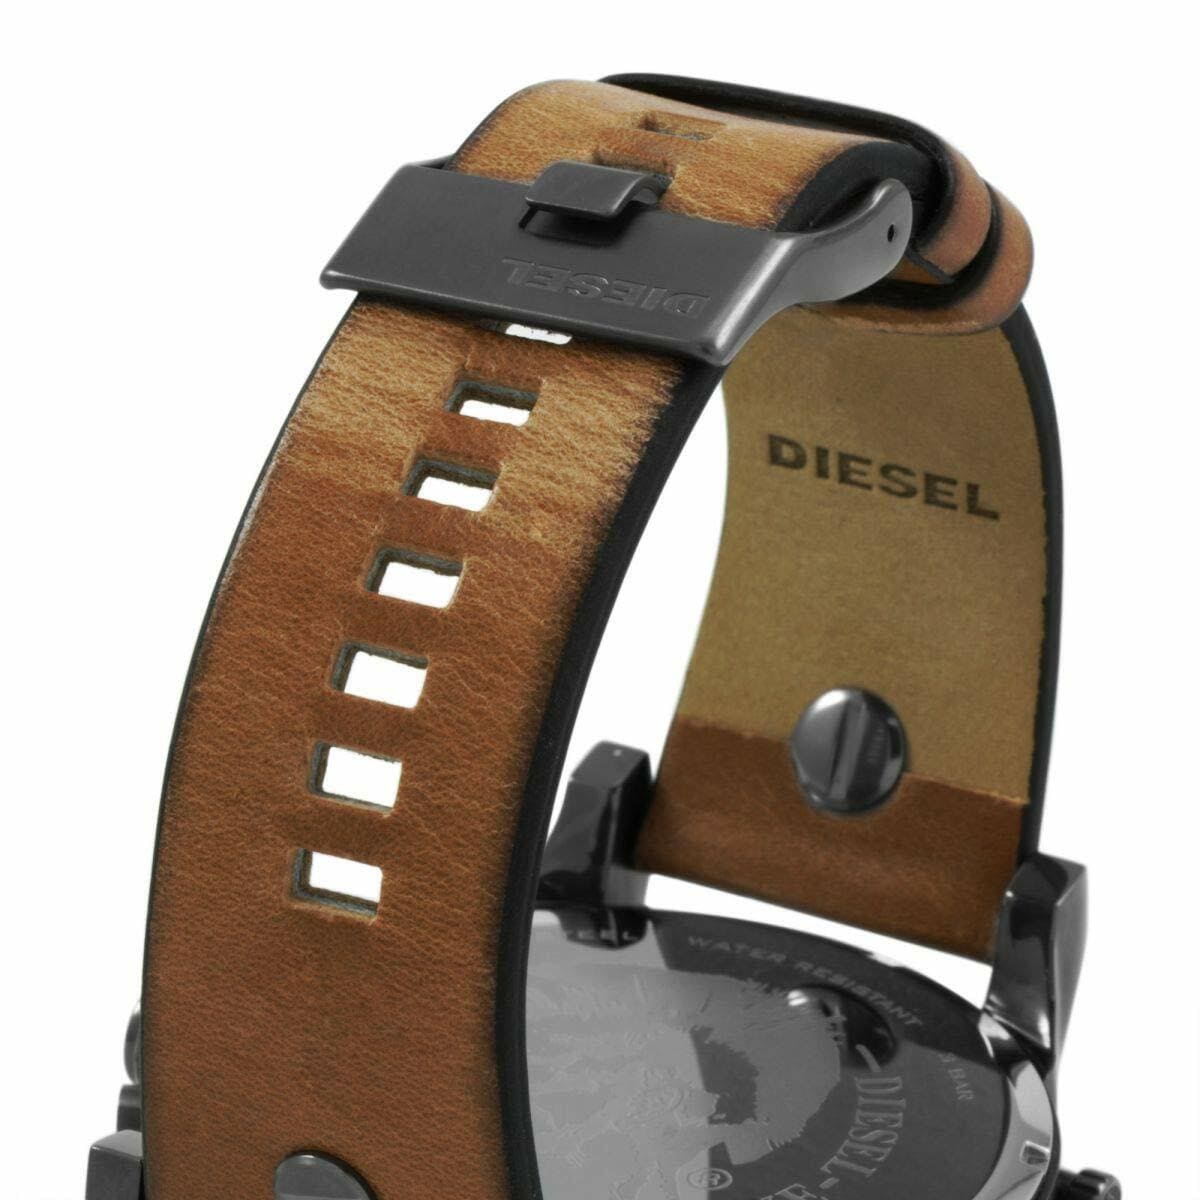 Diesel Mr Daddy 2.0 Black Dial Brown Leather Strap Watch For Men - DZ7332